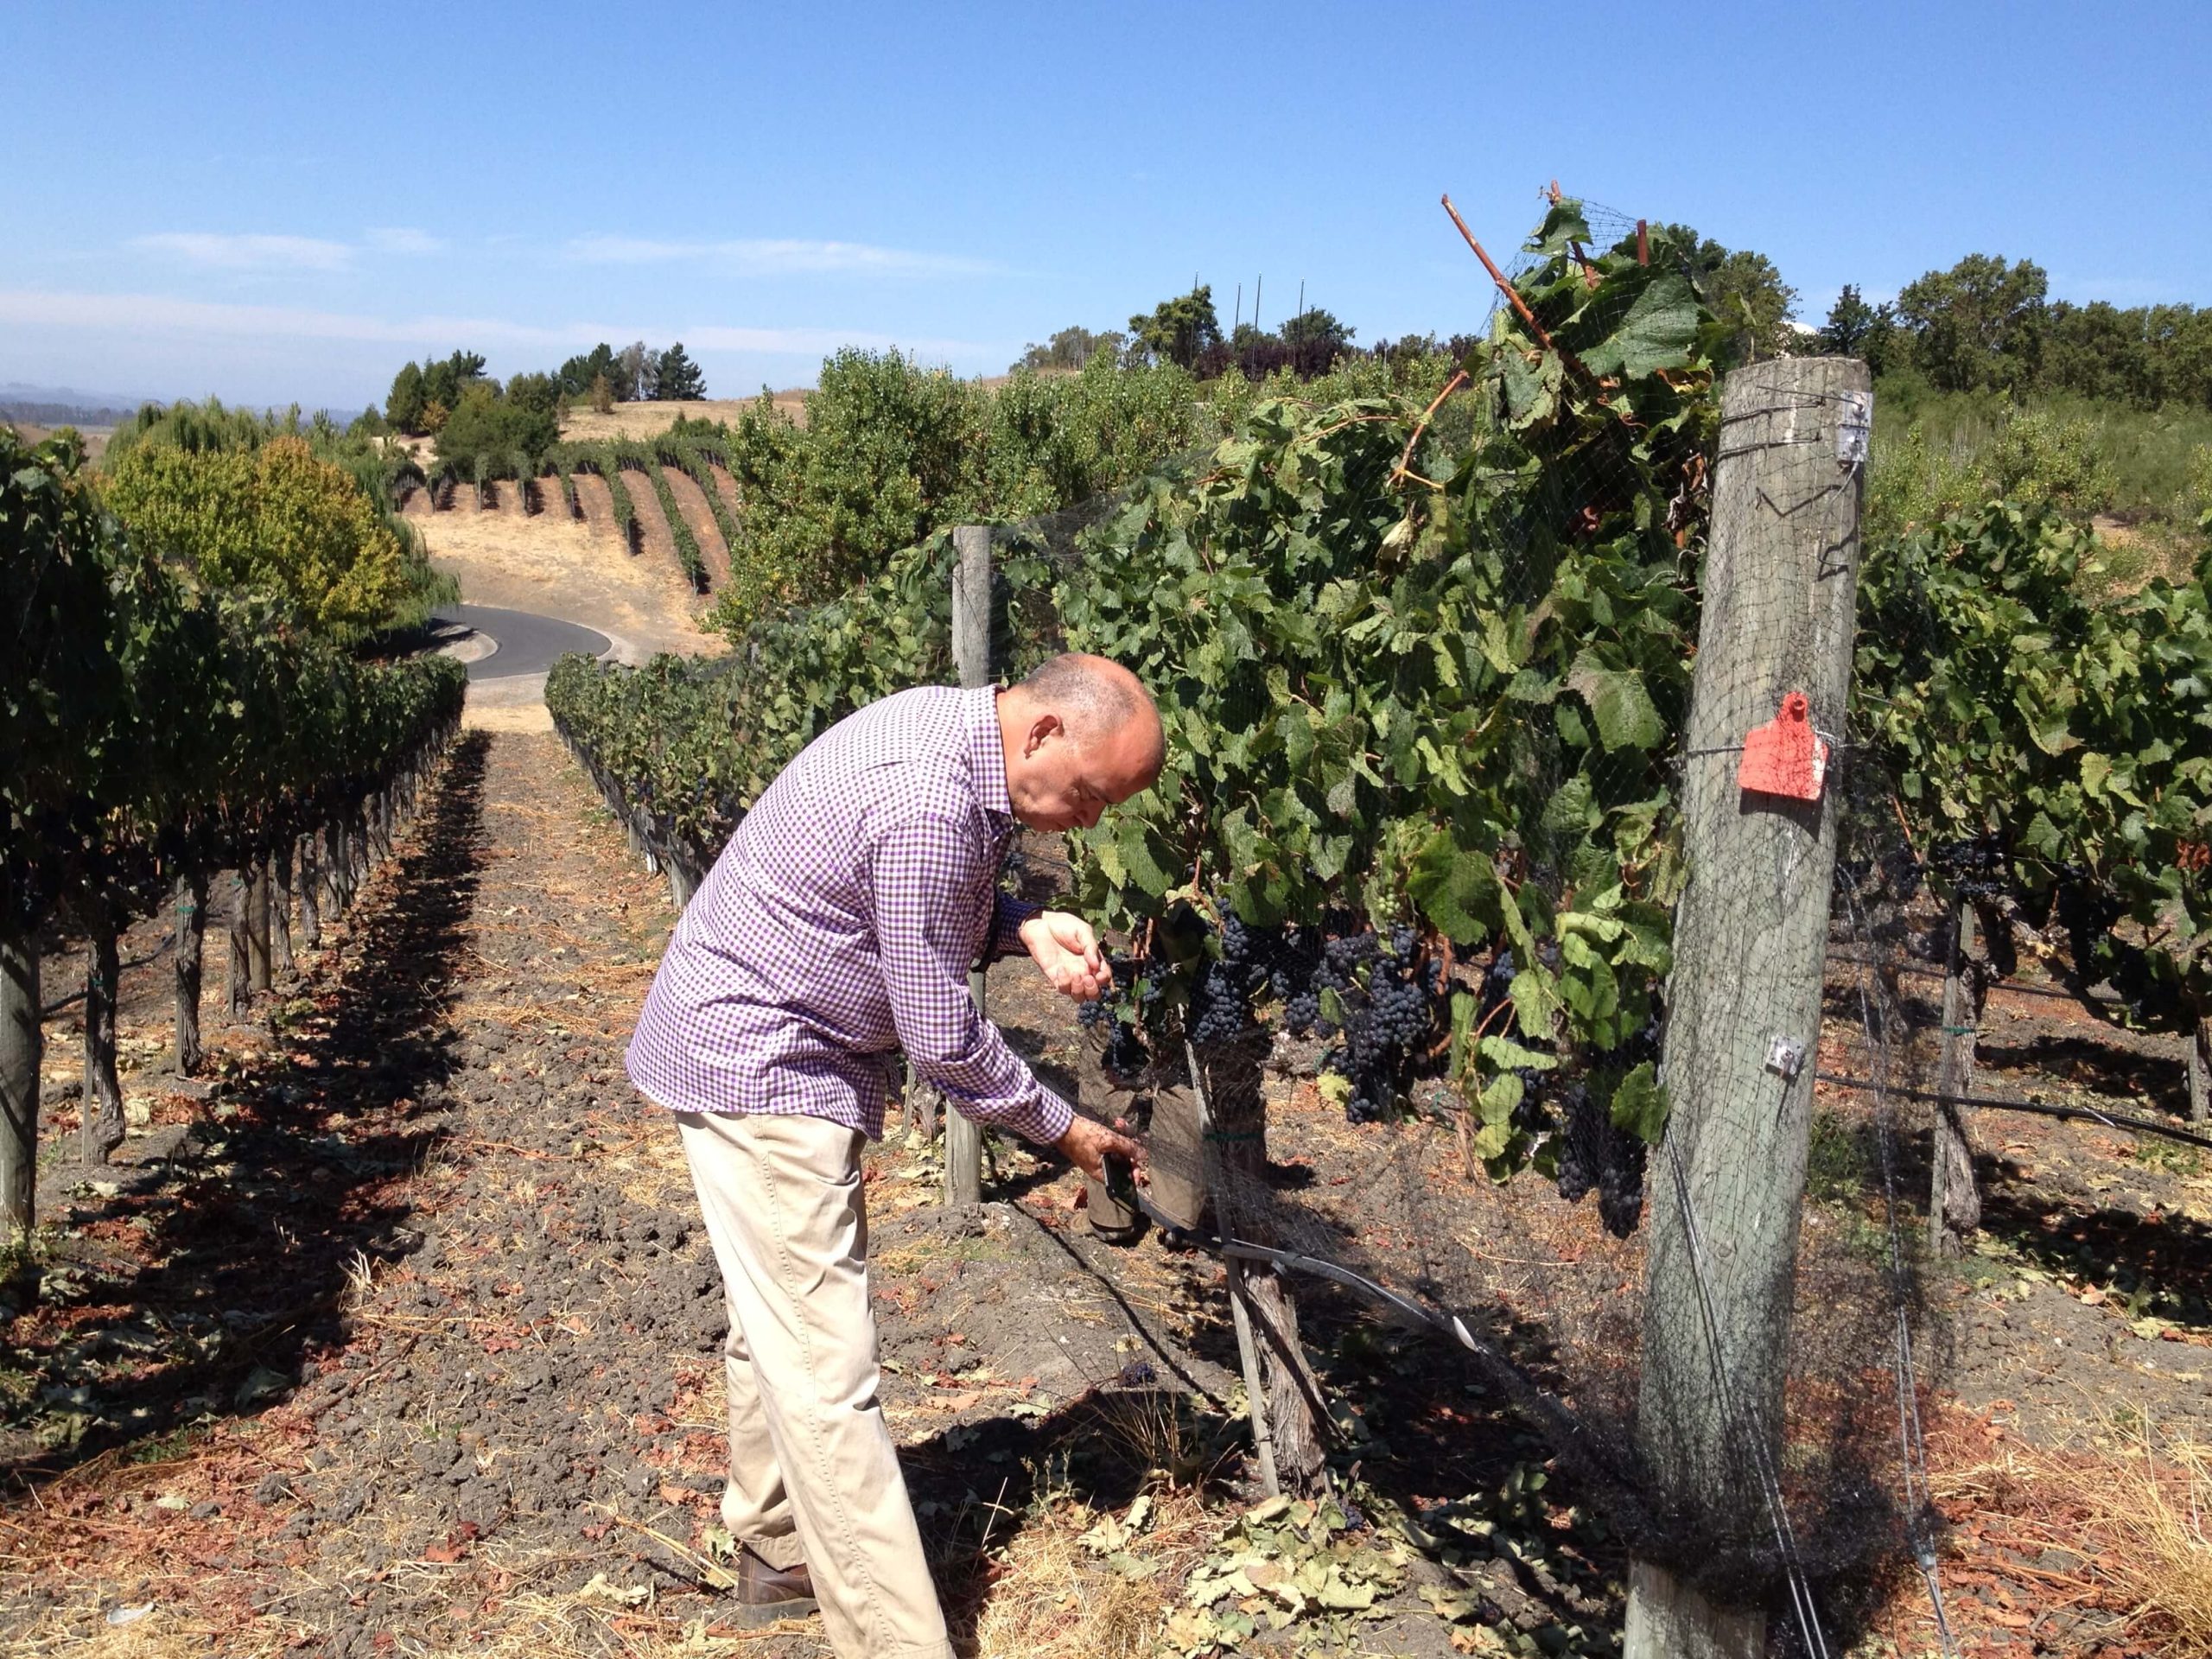 Soliste Wines of Sonoma Coast in California: A Twist of Fate